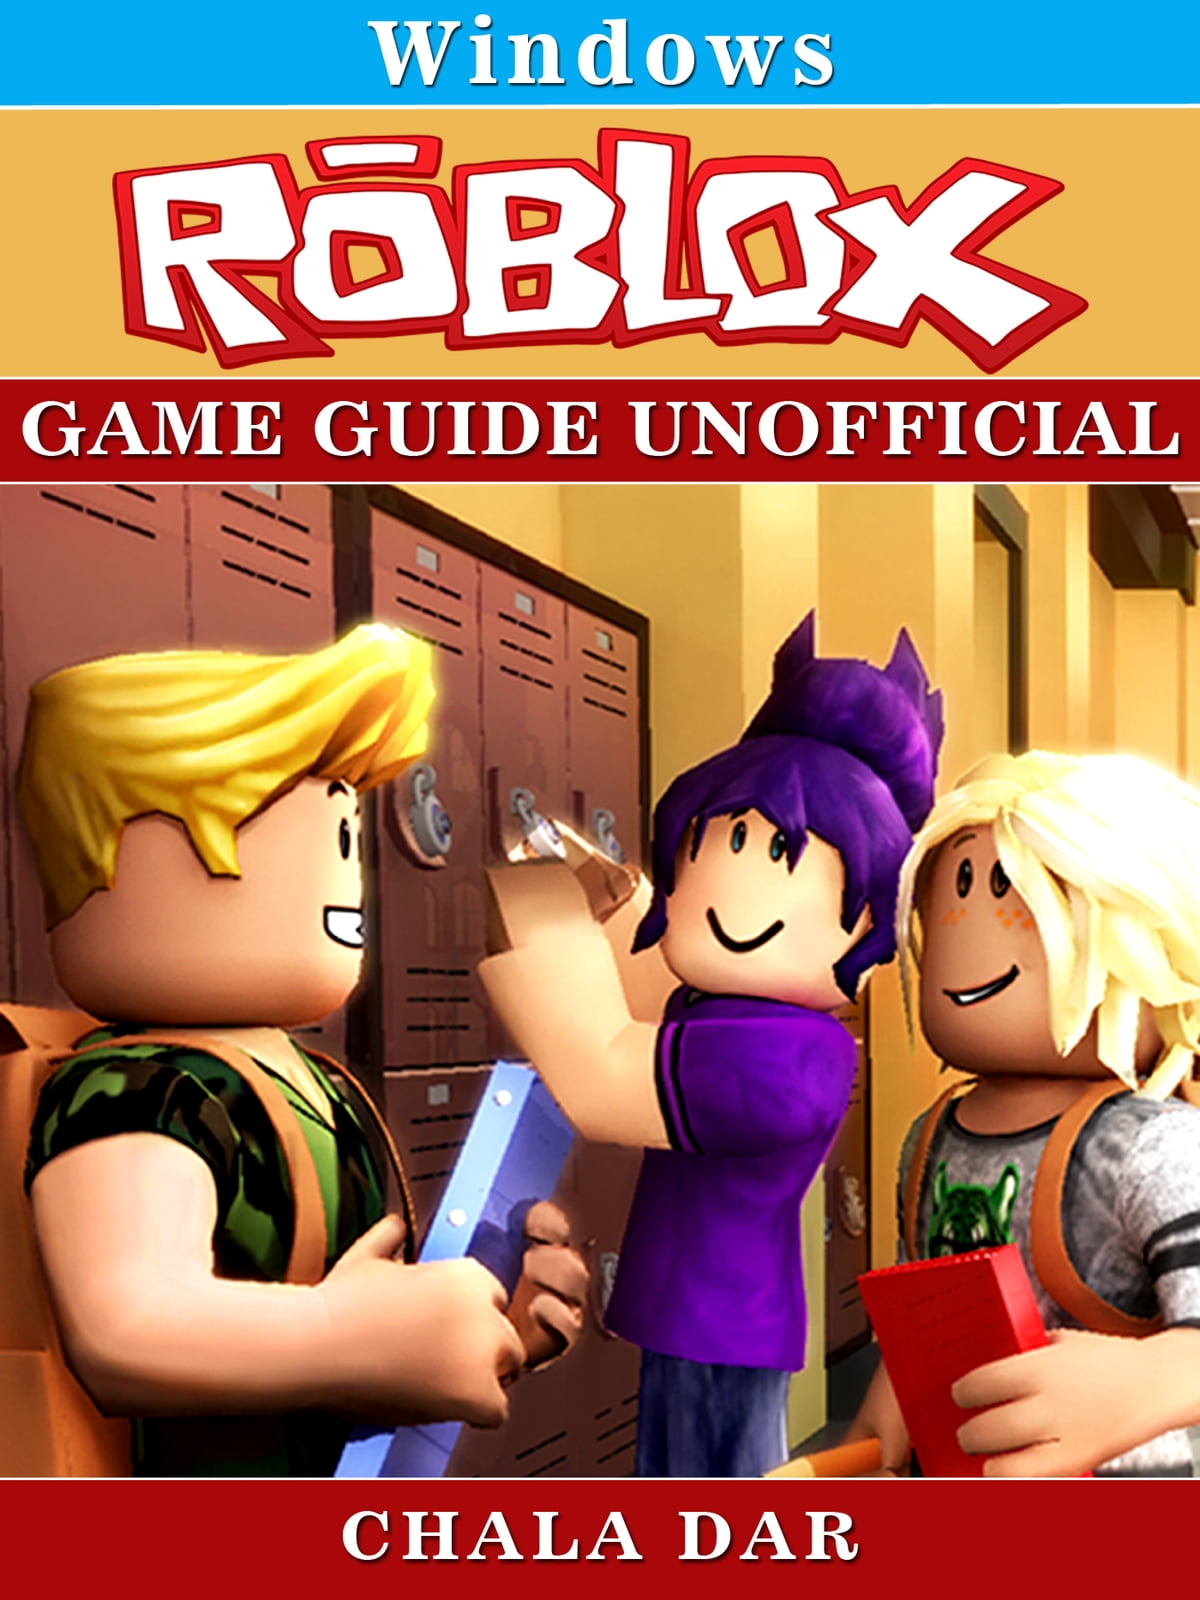 Roblox Game Download, Login, Studio, Hacks, India